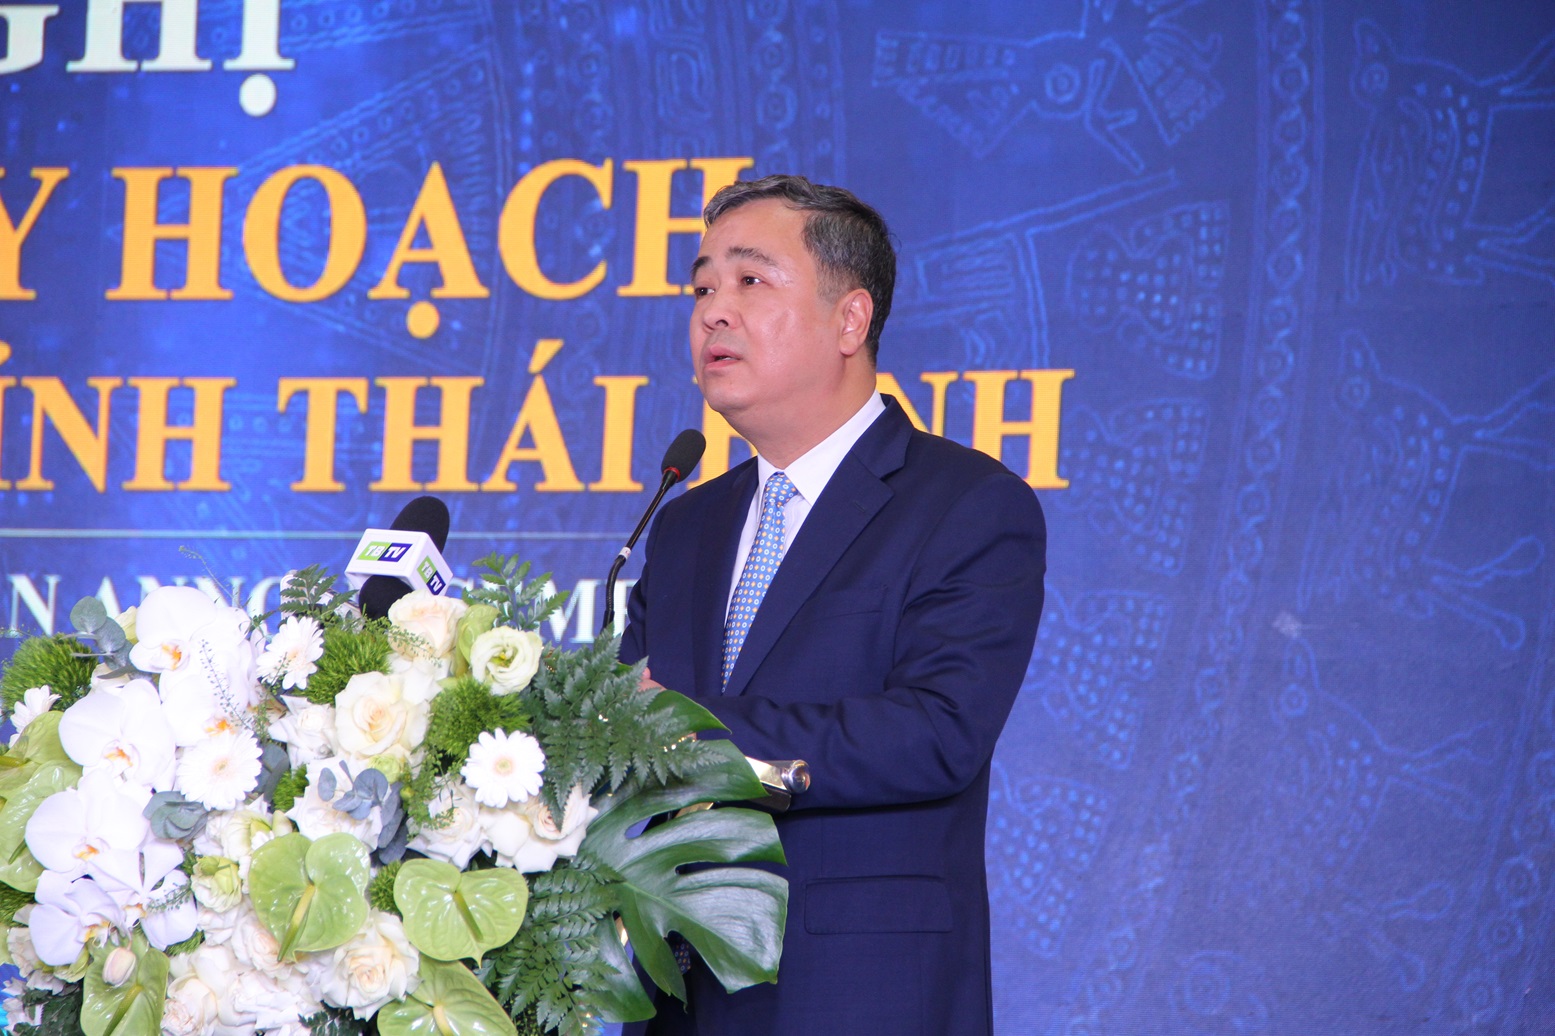 Bí thư Tỉnh ủy Thái Bình Ngô Đông Hải tiếp thu ý kiến chỉ đạo của Phó Thủ tướng, đồng thời khẳng định sẽ quyết tâm đưa Thái Bình trở thành tỉnh phát triển trong tương lai không xa